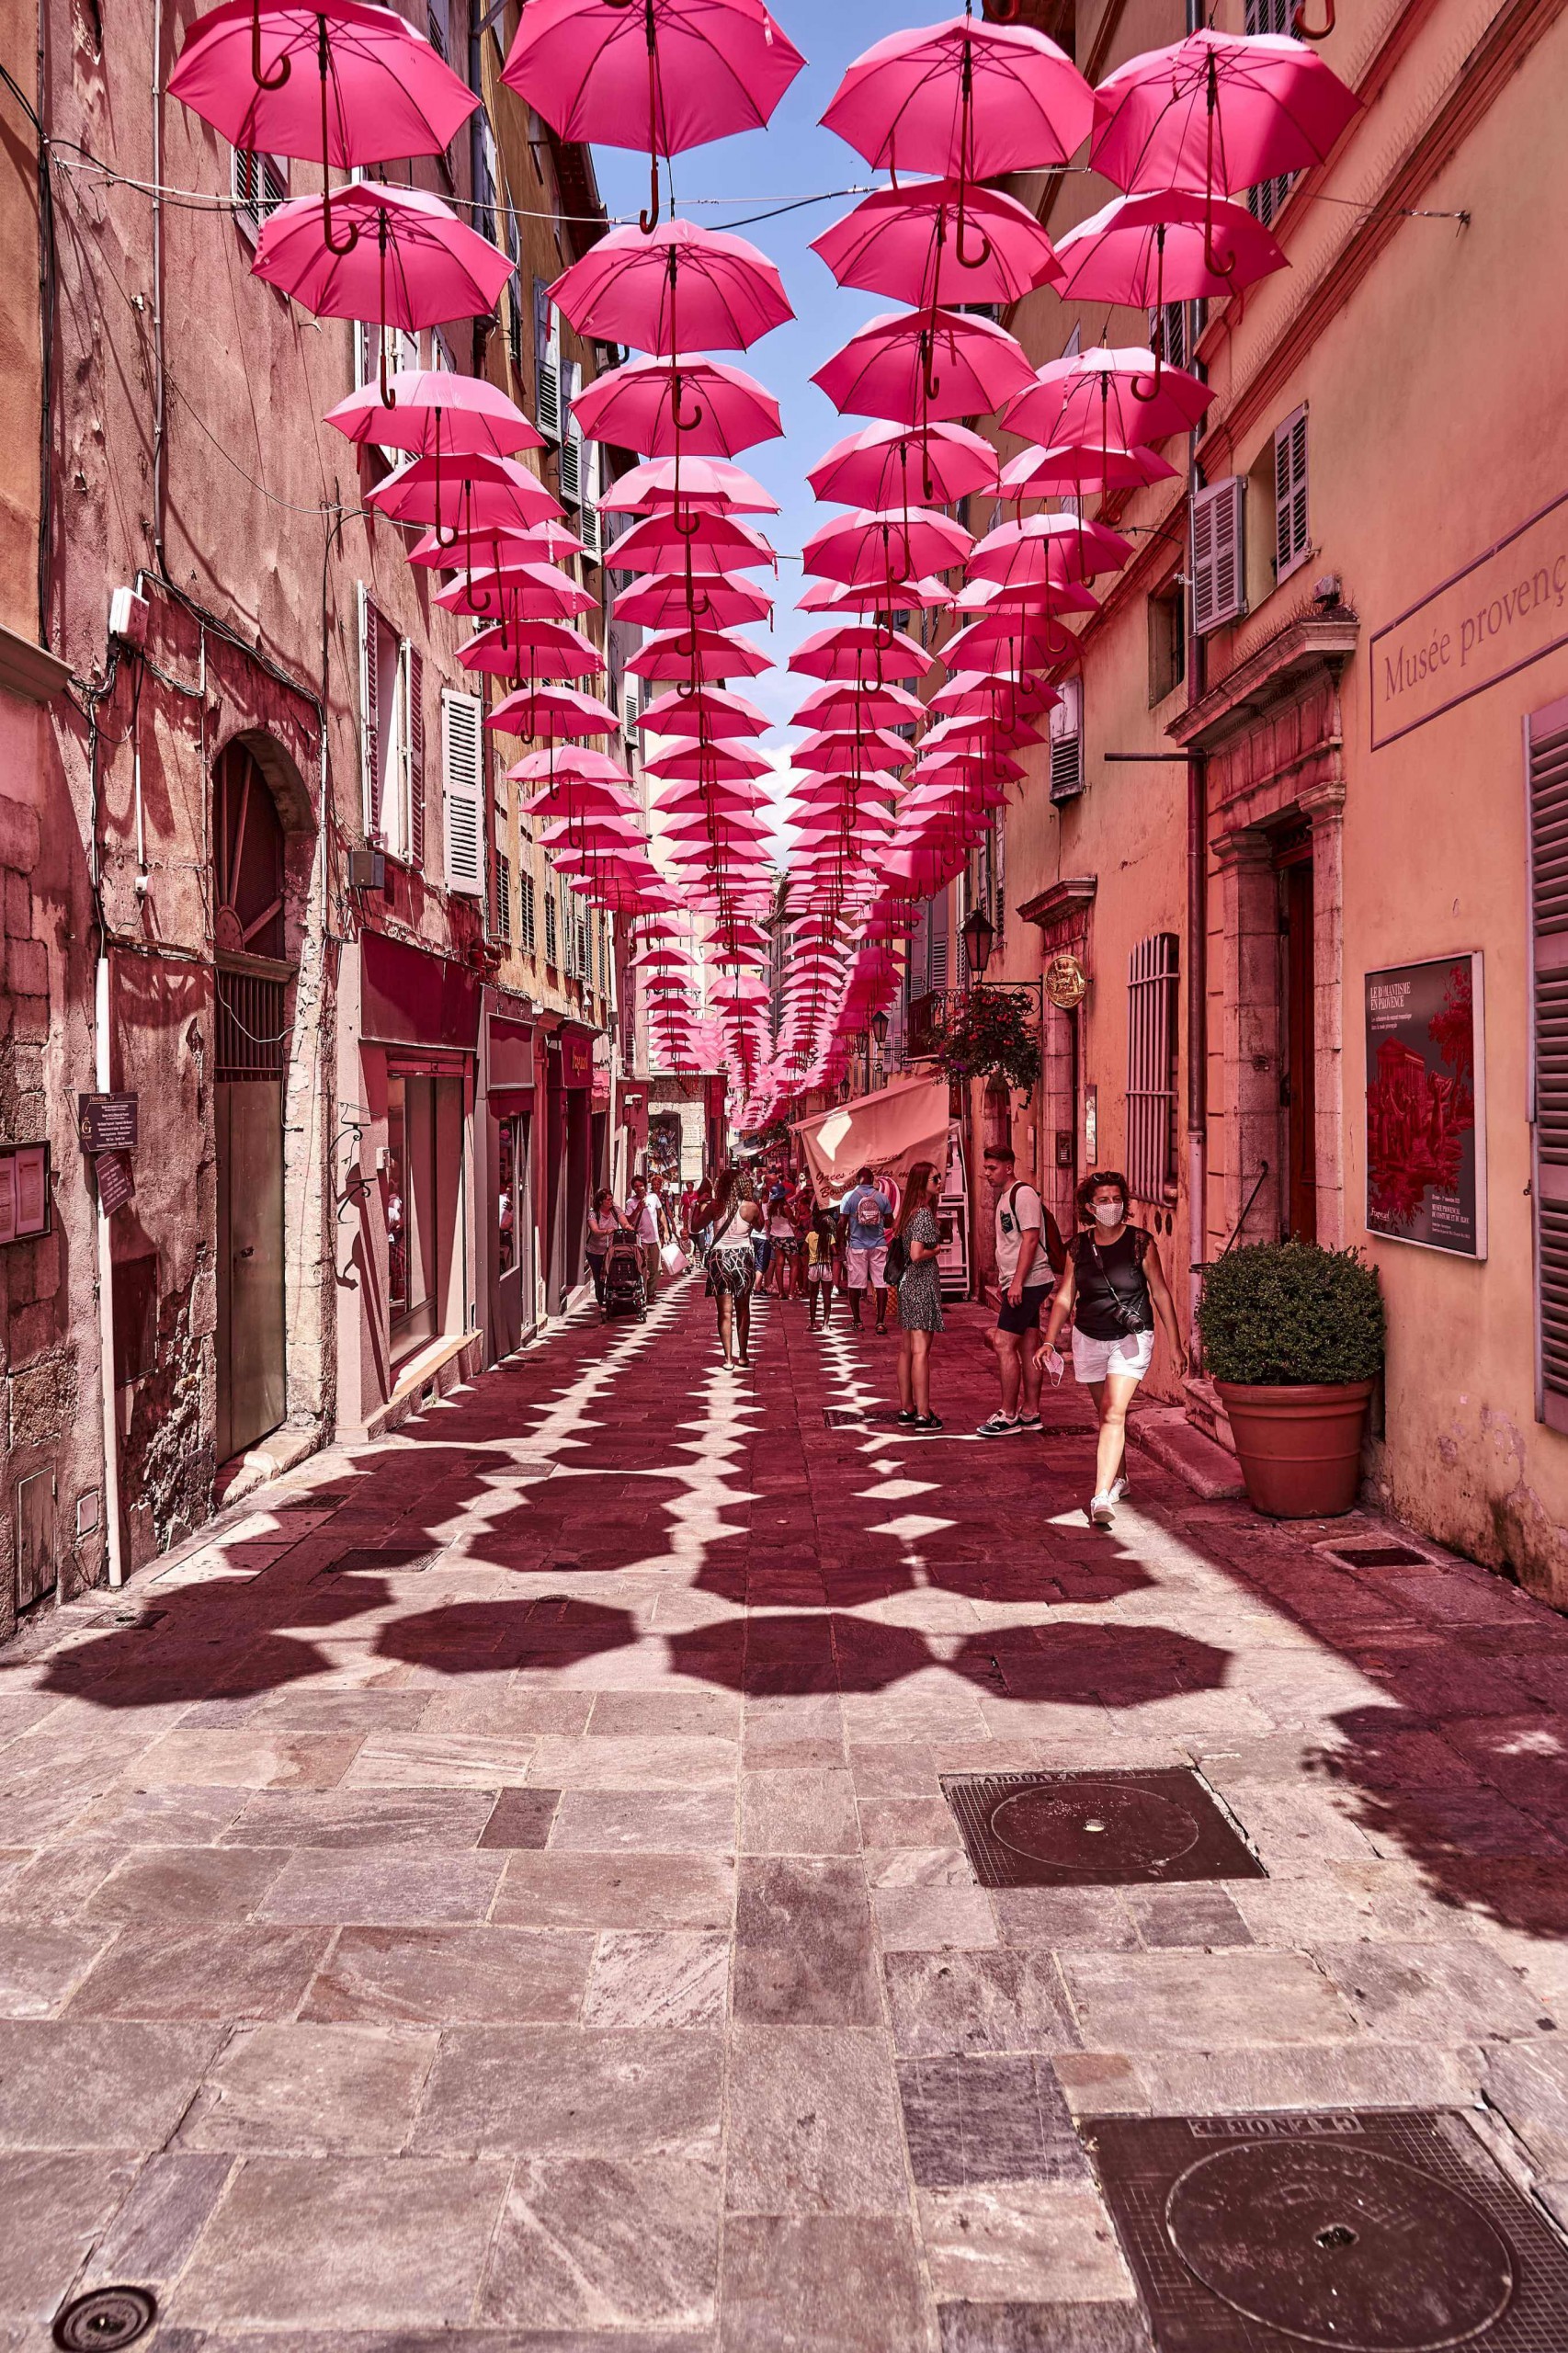 an art installation of pink umbrellas